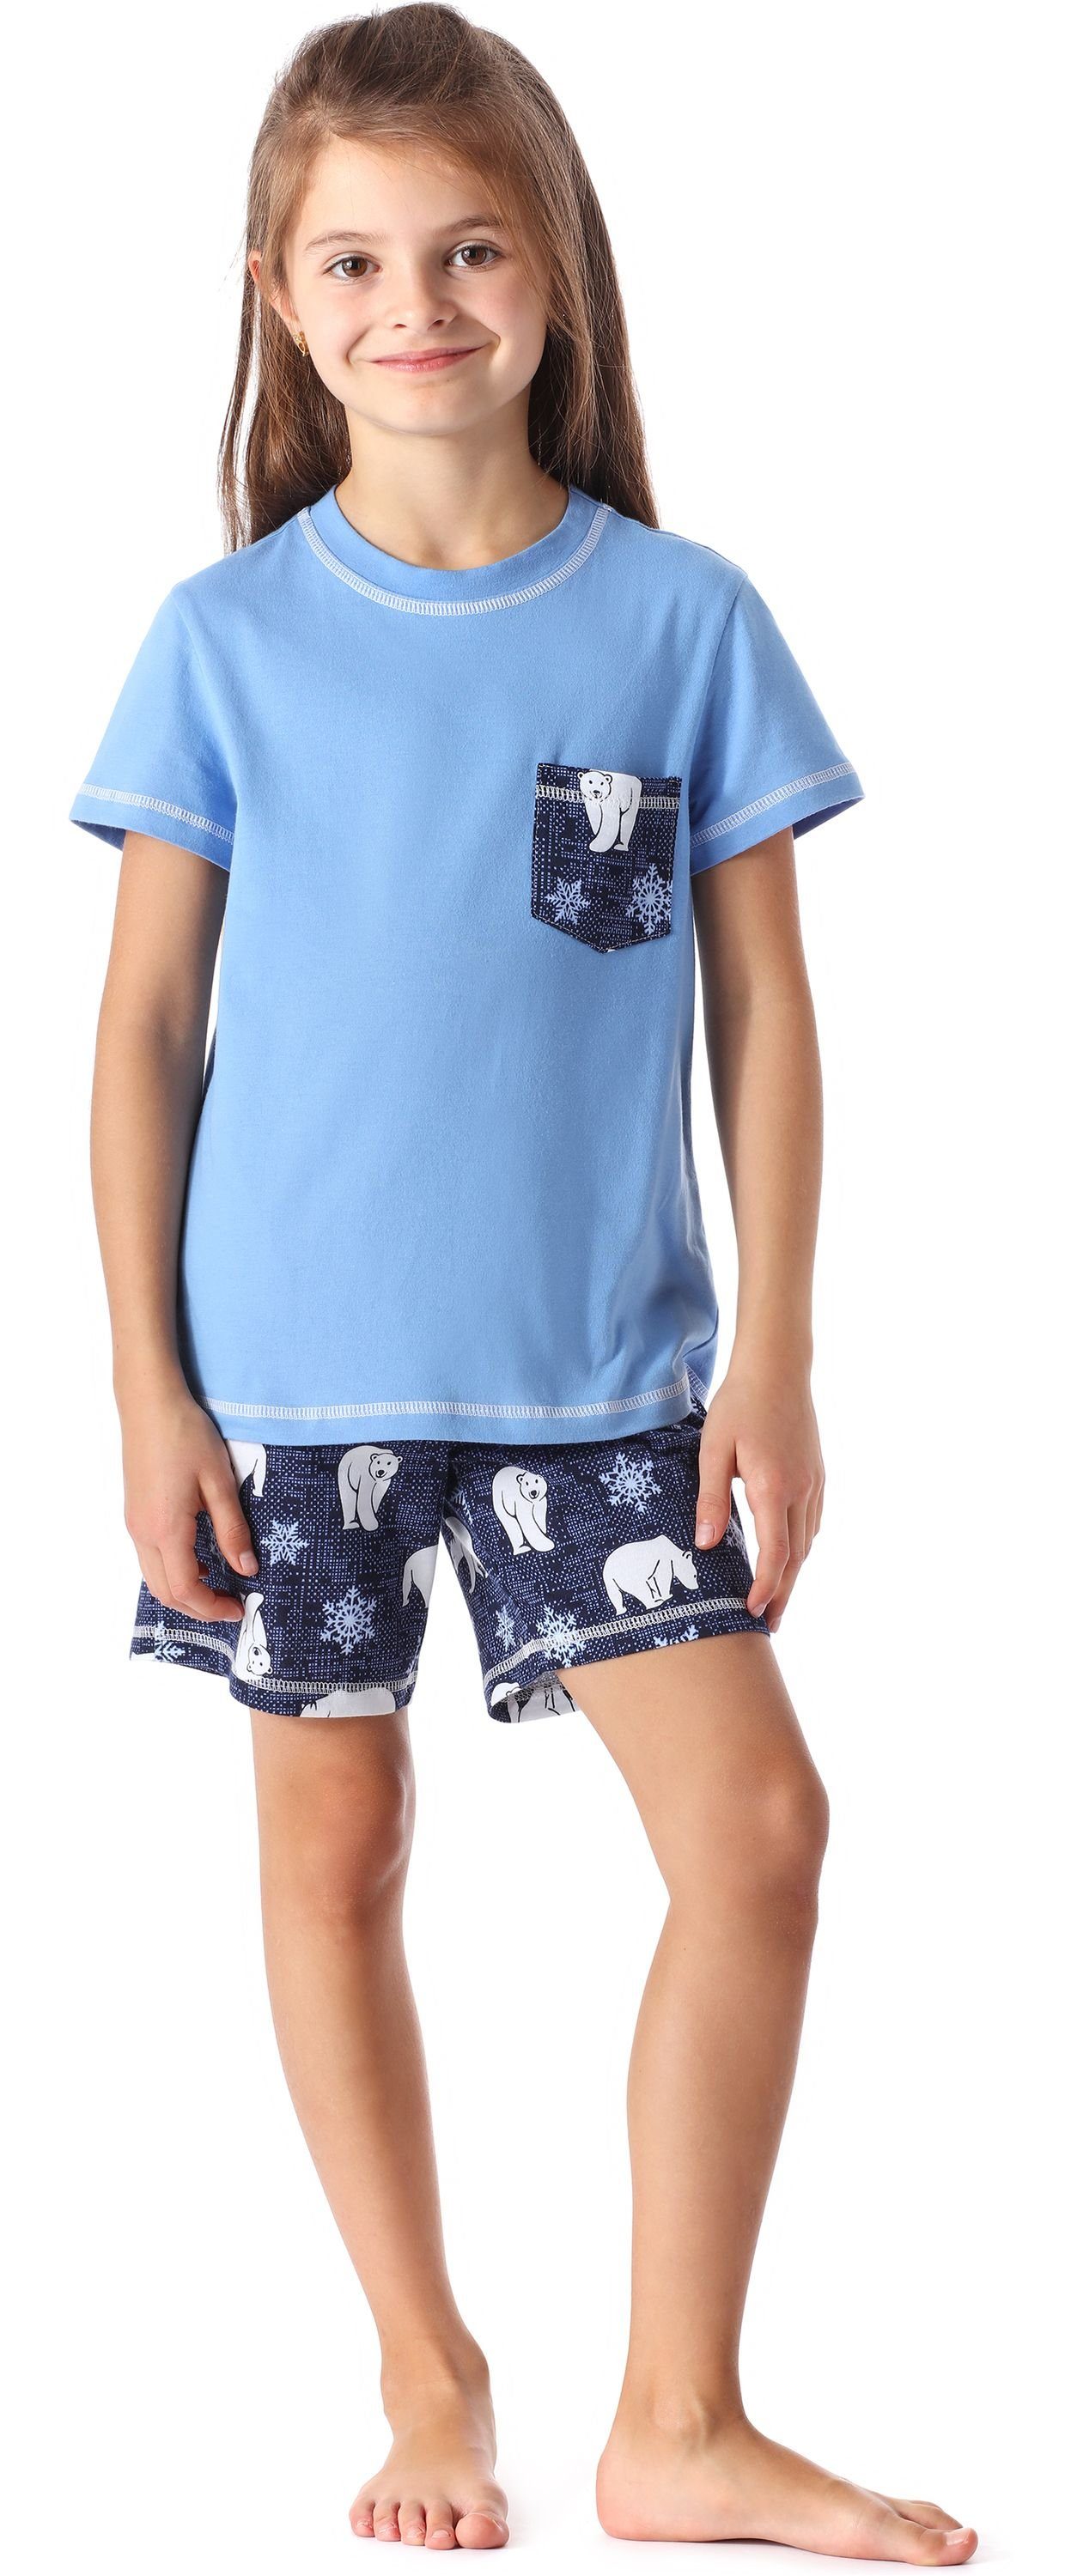 MS10-292 Schlafanzüge Baumwolle aus Pyjama Mädchen Style Schlafanzug Blau/Bär Set Kurz Merry